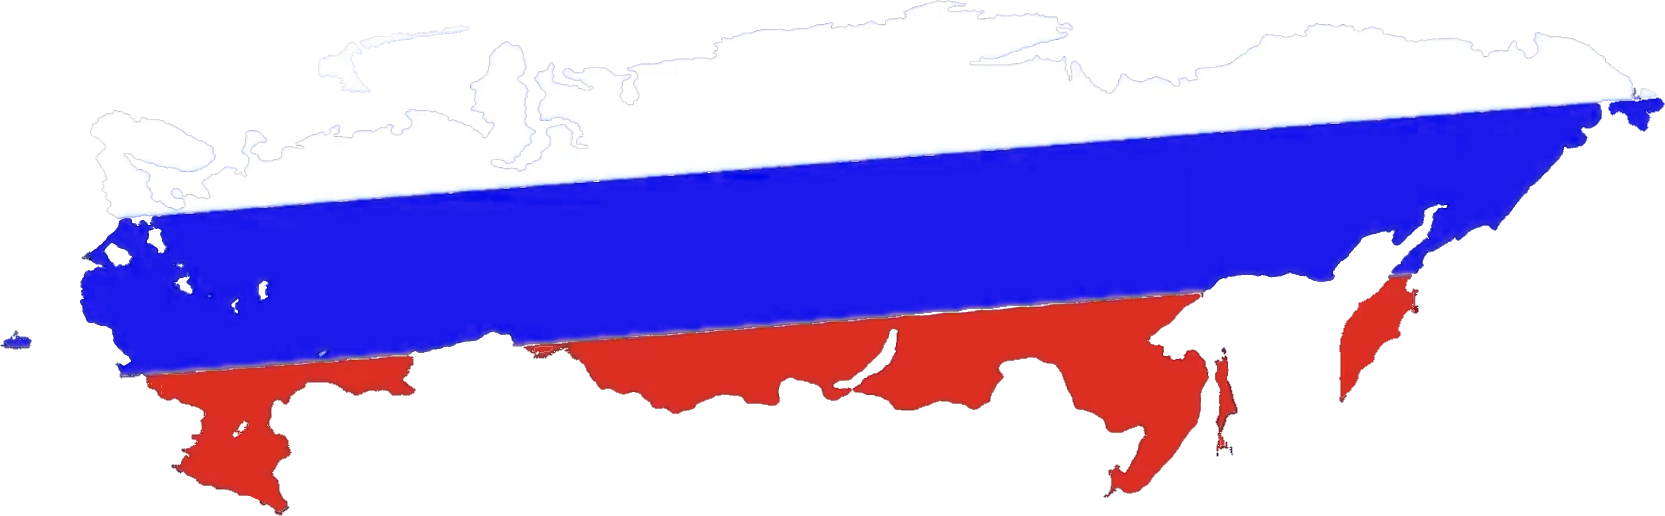 Alternate Flag of Russia (1991-1993) by MoldaviaballGeneral on DeviantArt